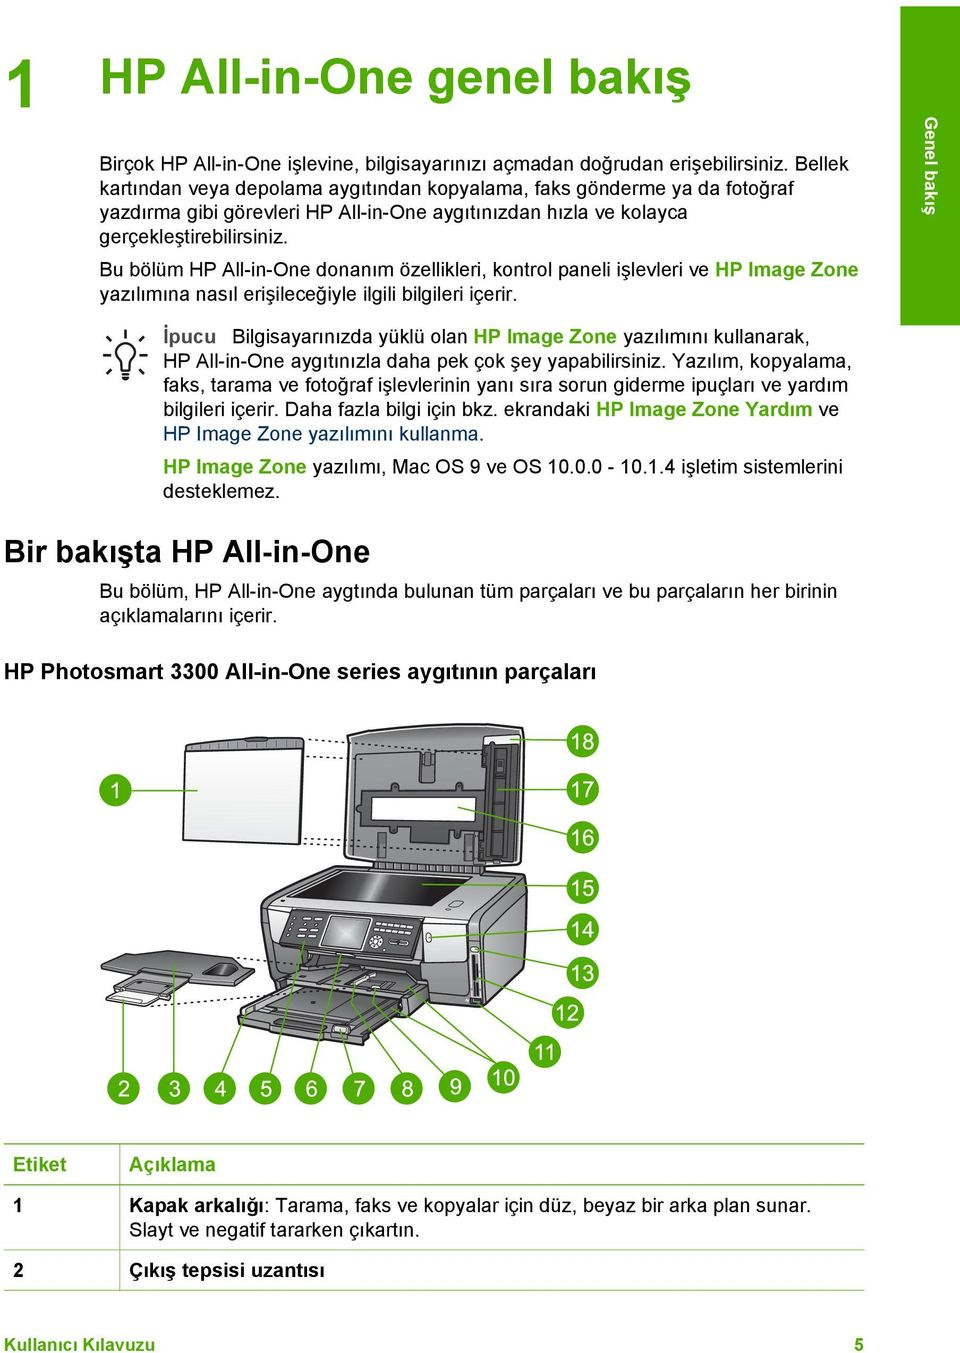 Bu bölüm HP All-in-One donanım özellikleri, kontrol paneli işlevleri ve HP Image Zone yazılımına nasıl erişileceğiyle ilgili bilgileri içerir.